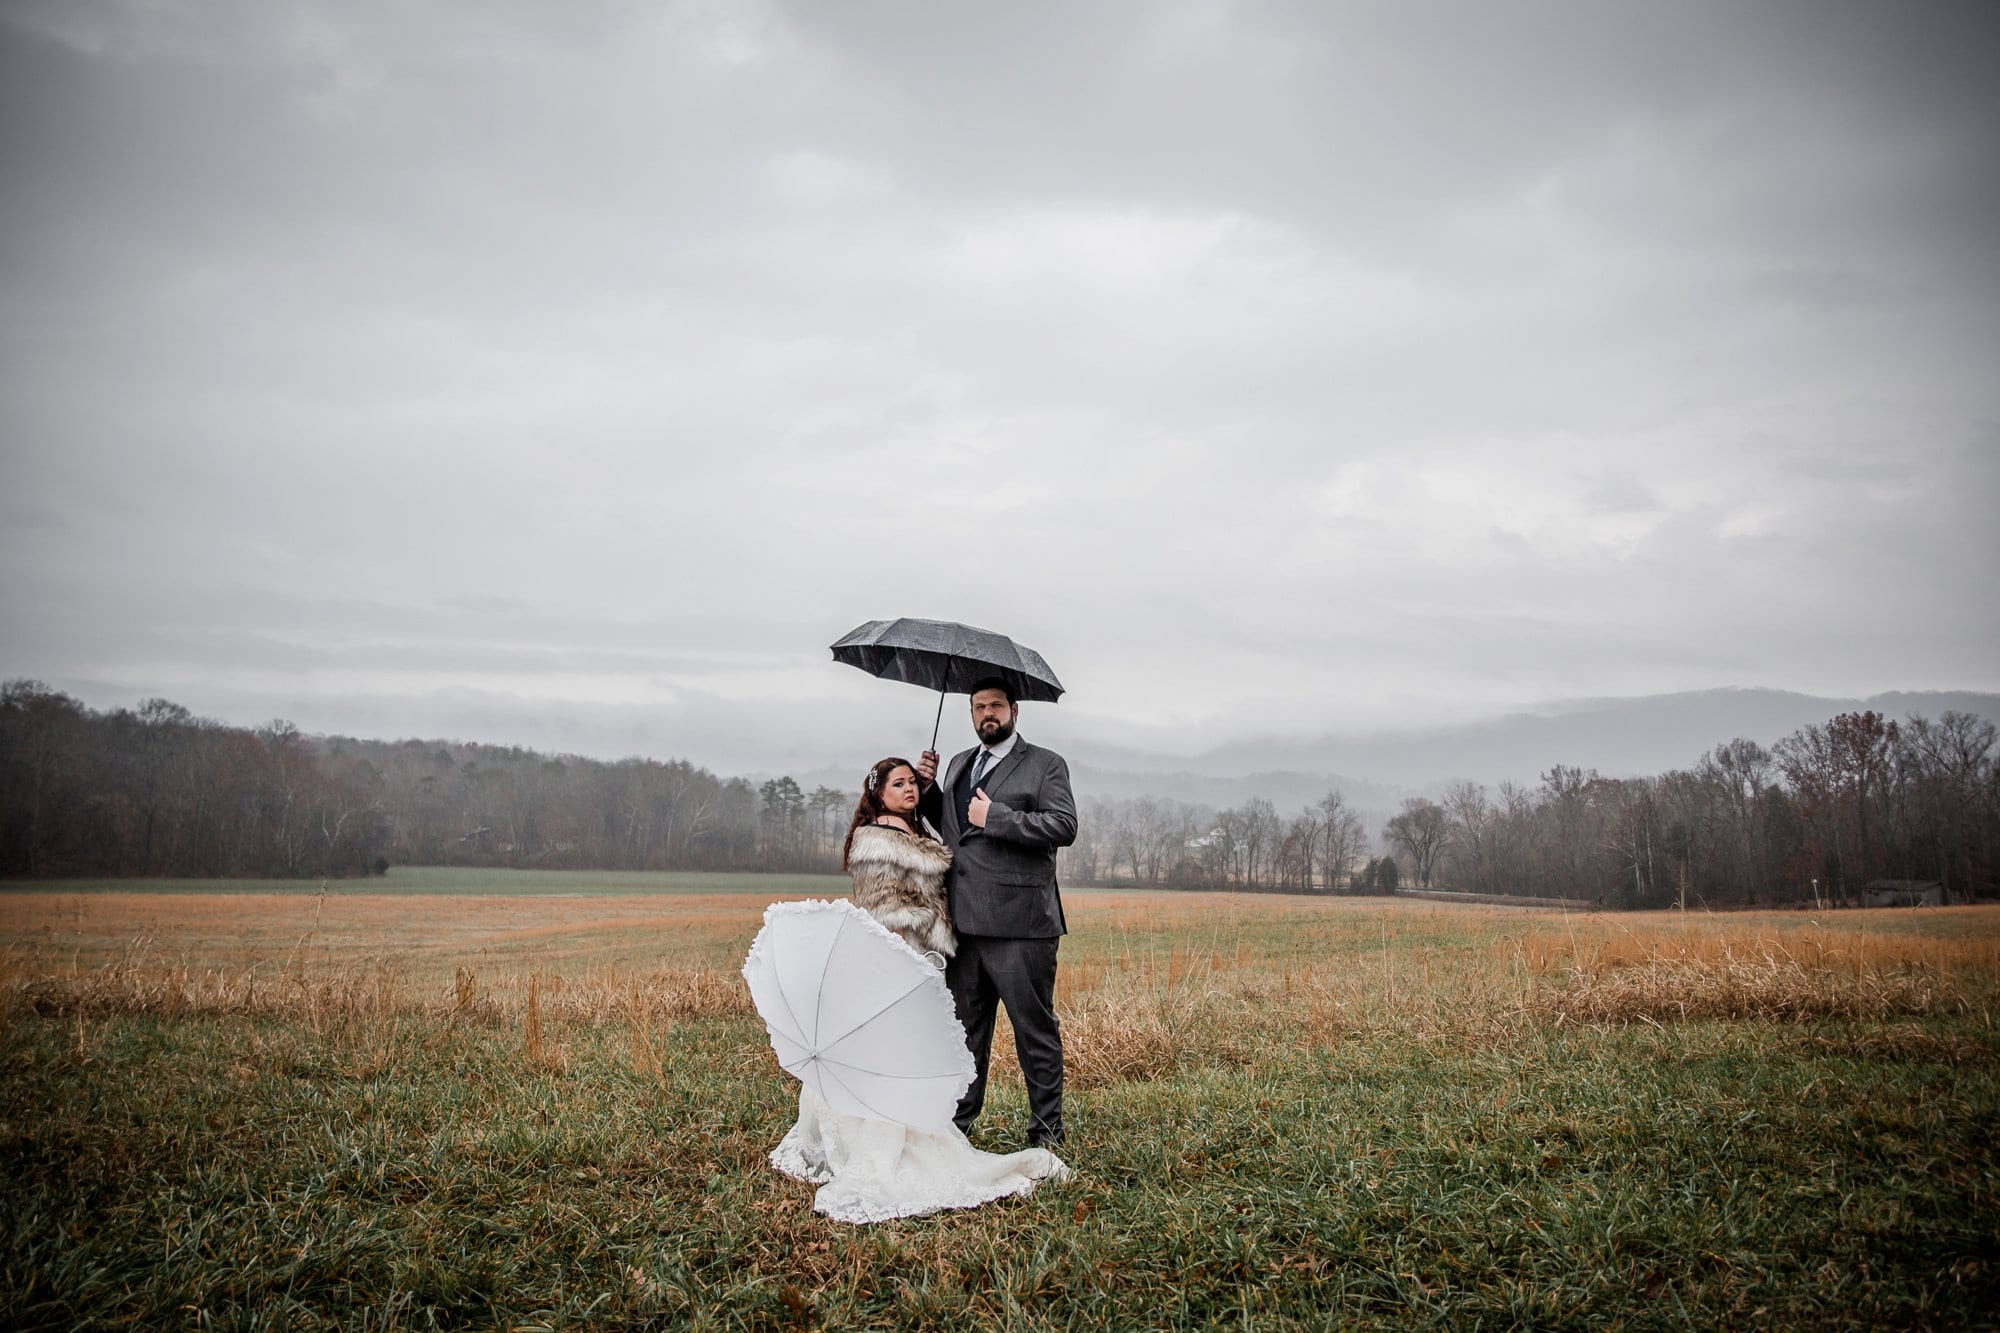 Rainy day weddings in the Smokey Mountains at a Smokey Mountain elopement.